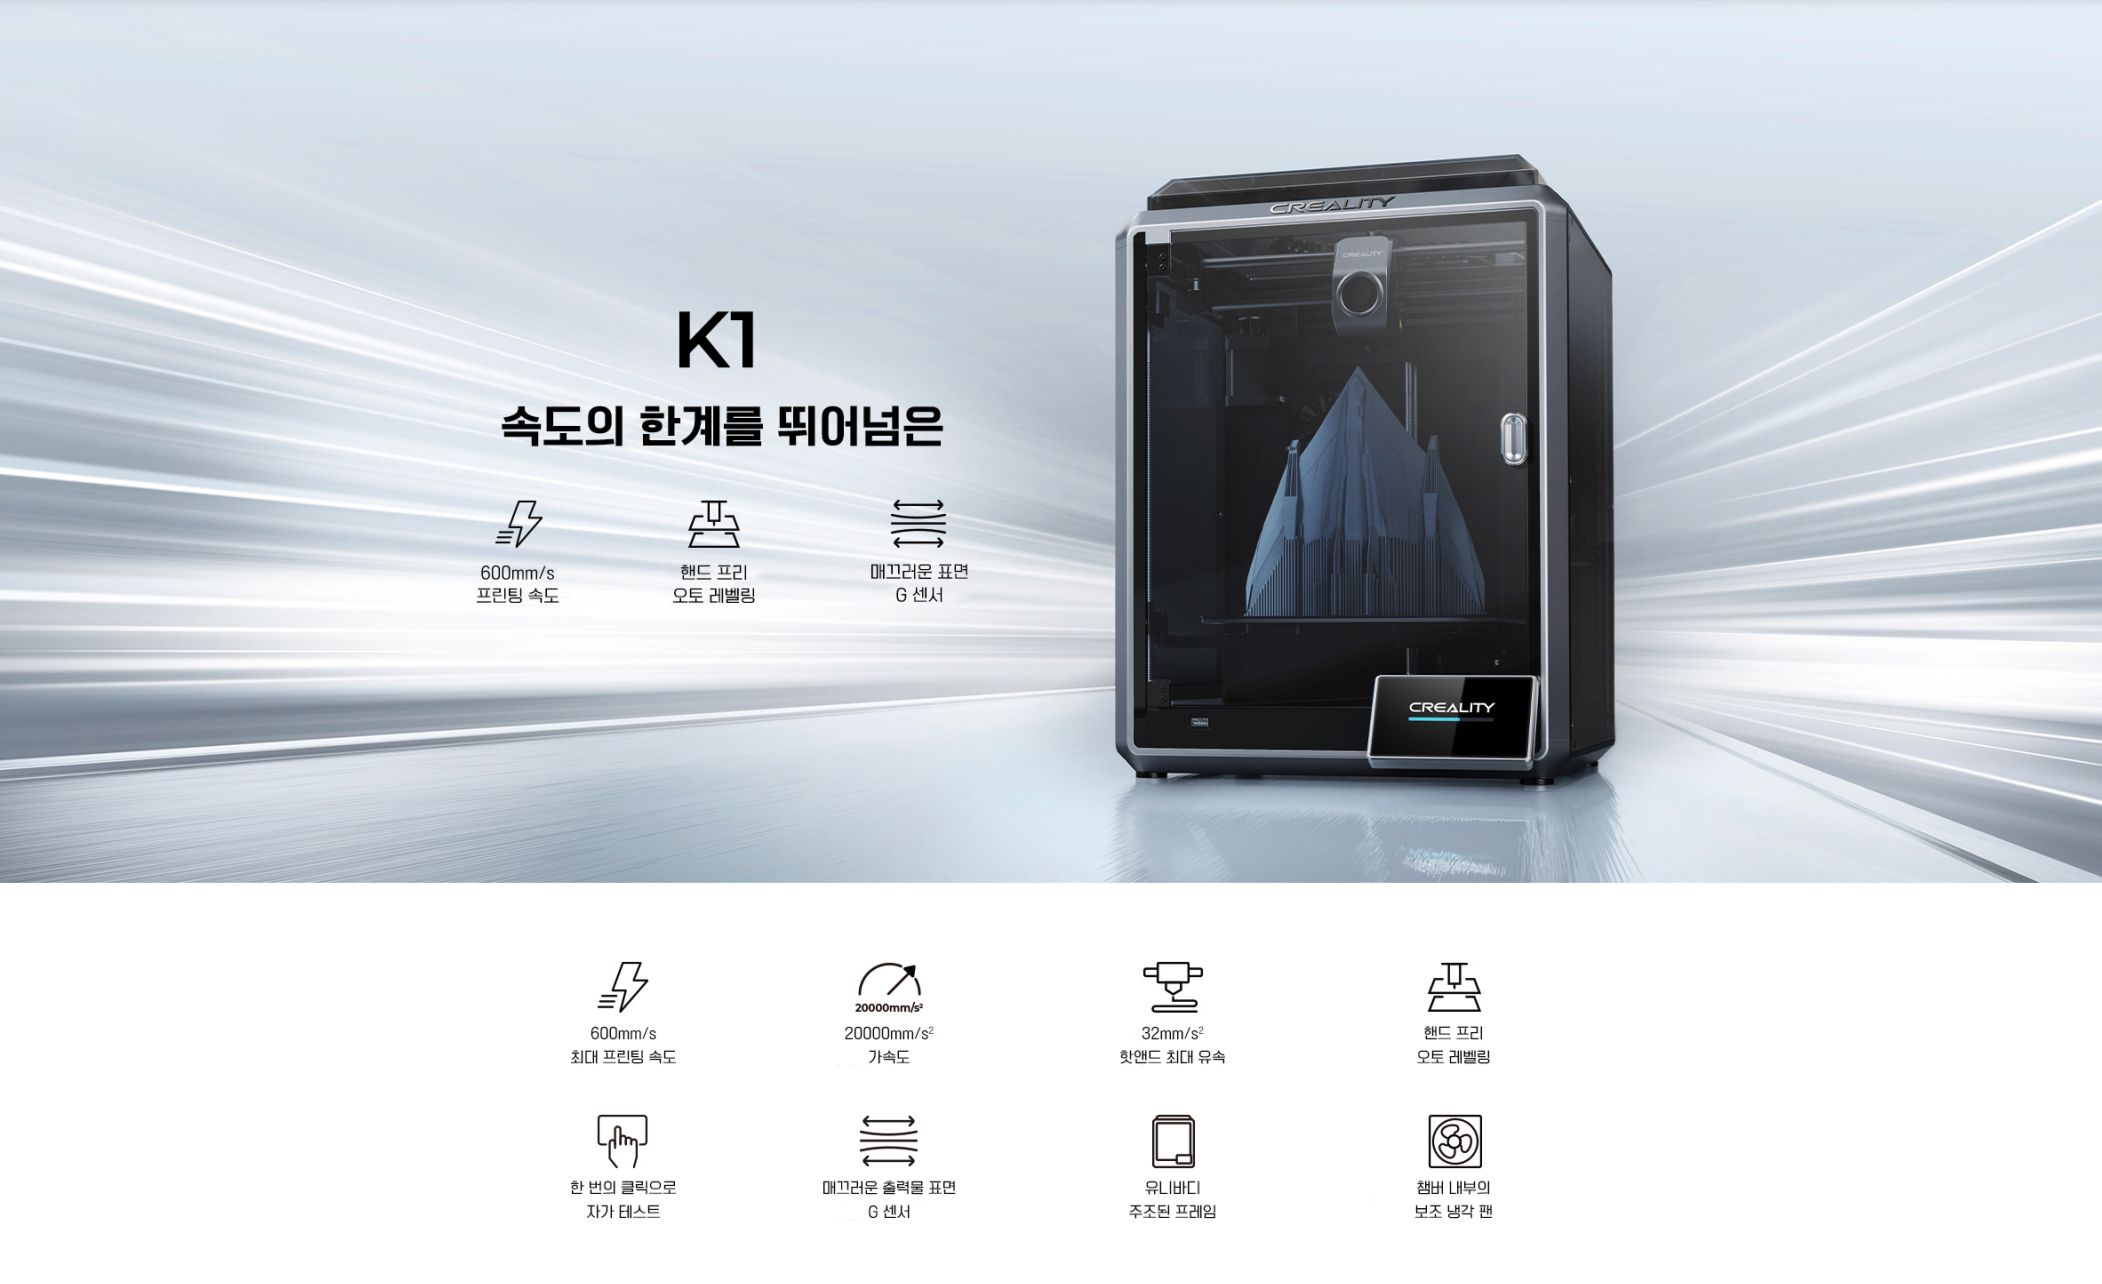 크리얼리티  Creality K1, K1맥스 고속출력 3D프린터 600mm/s     
덕유항공은 크리얼리티 3D프린터 엔더3 모델을 최초 소개하였으며, 

크리얼리티 전 모델을 취급하고 있습니다.